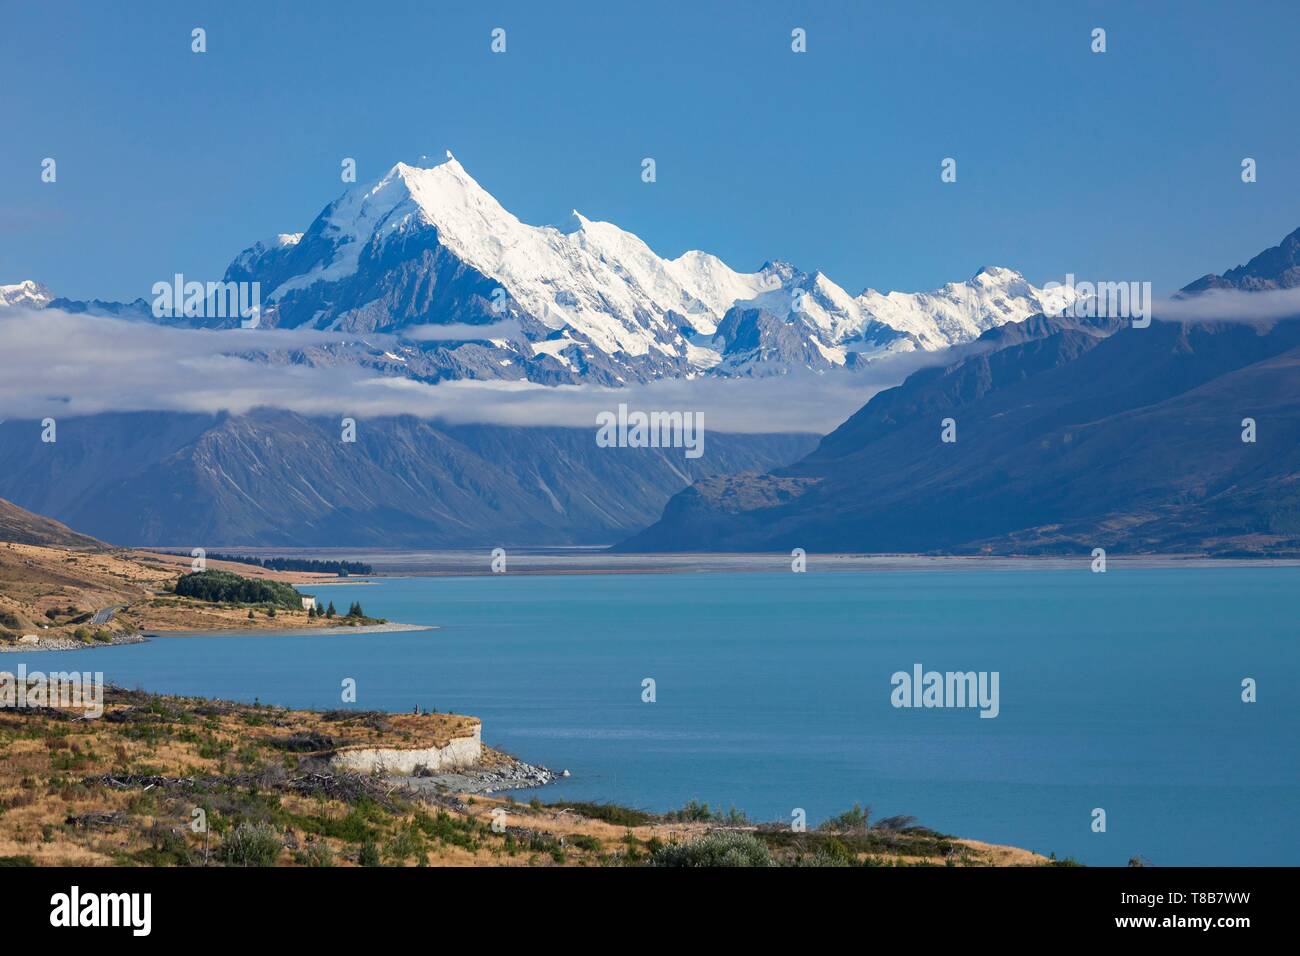 Nouvelle Zélande, île du Sud, région de Canterbury, Aoraki Mount Cook, 3724 m, étiquetés et site du patrimoine mondial de l'UNESCO, le lac Pukaki Aoraki Mount Cook Park Banque D'Images